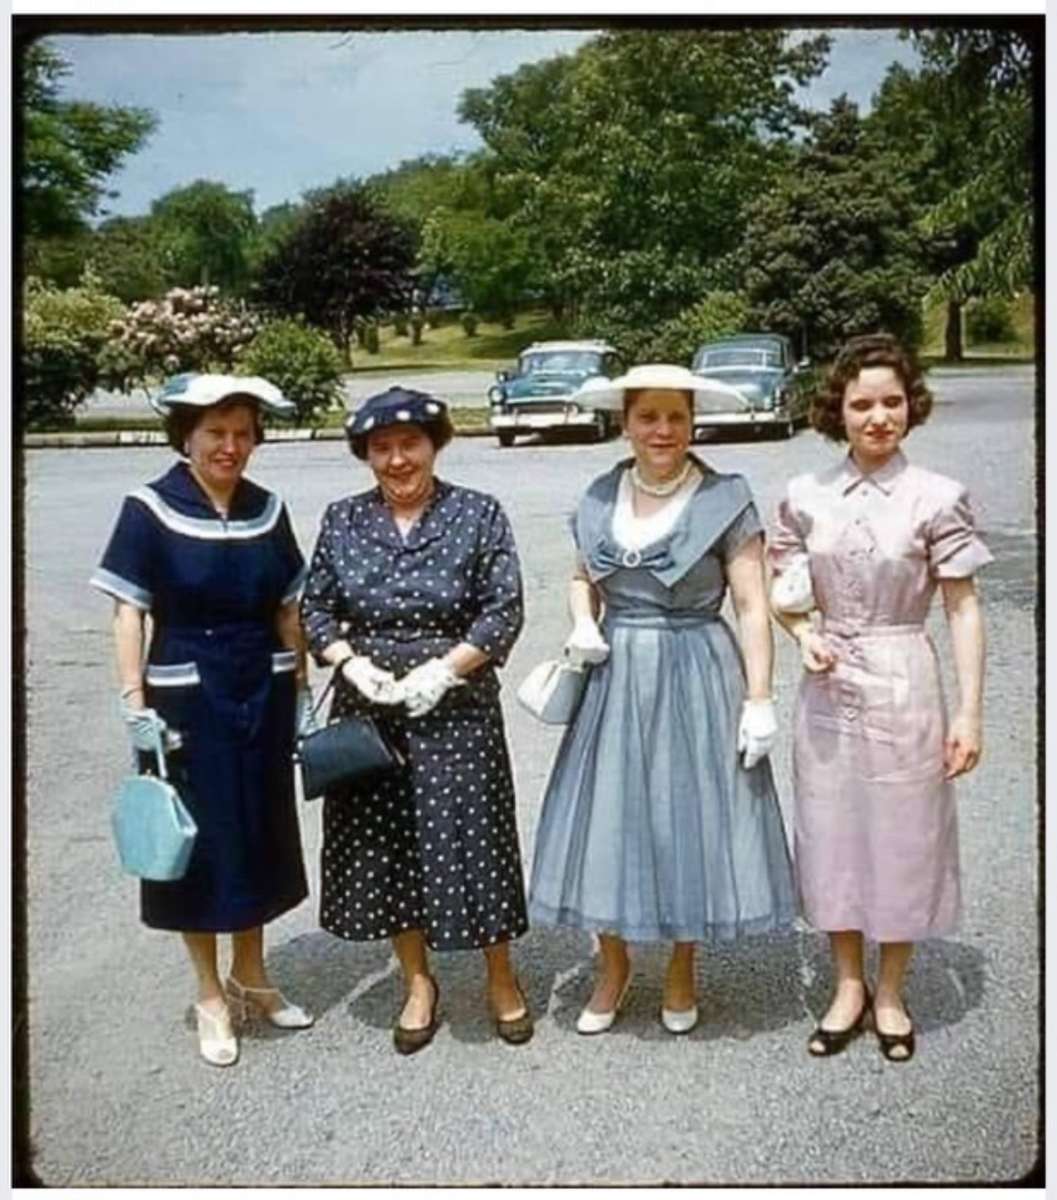 Joyeuses Pâques de la part de quelques dames du début des années 1950. puzzle en ligne